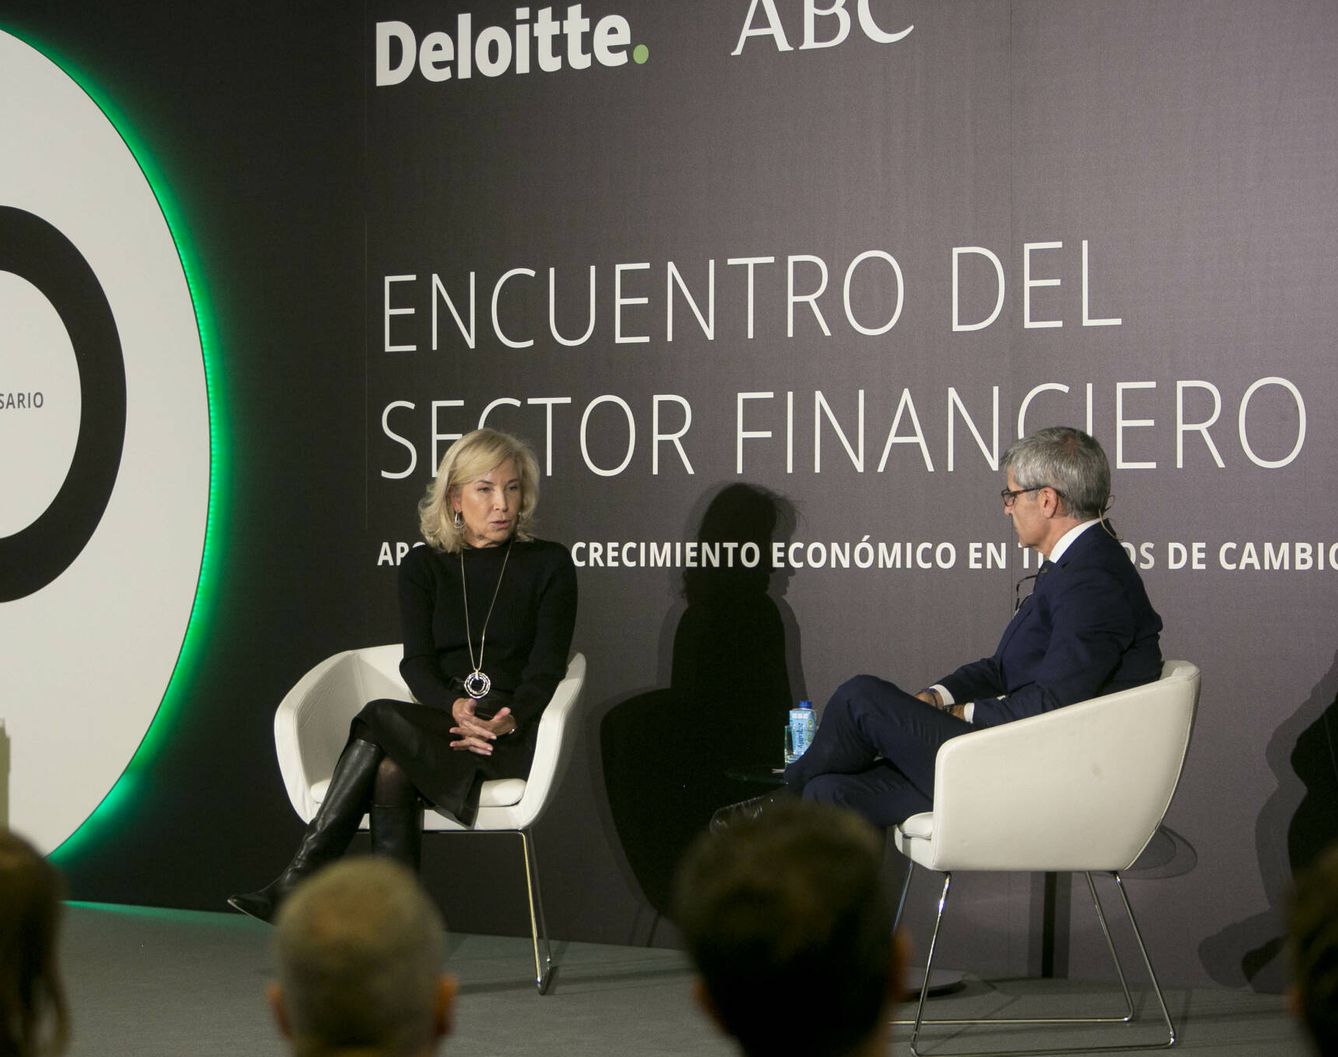 María Dolores Dancausa (i), CEO de Bankinter, en el acto de Deloitte. (Deloitte/Jorge Tores)